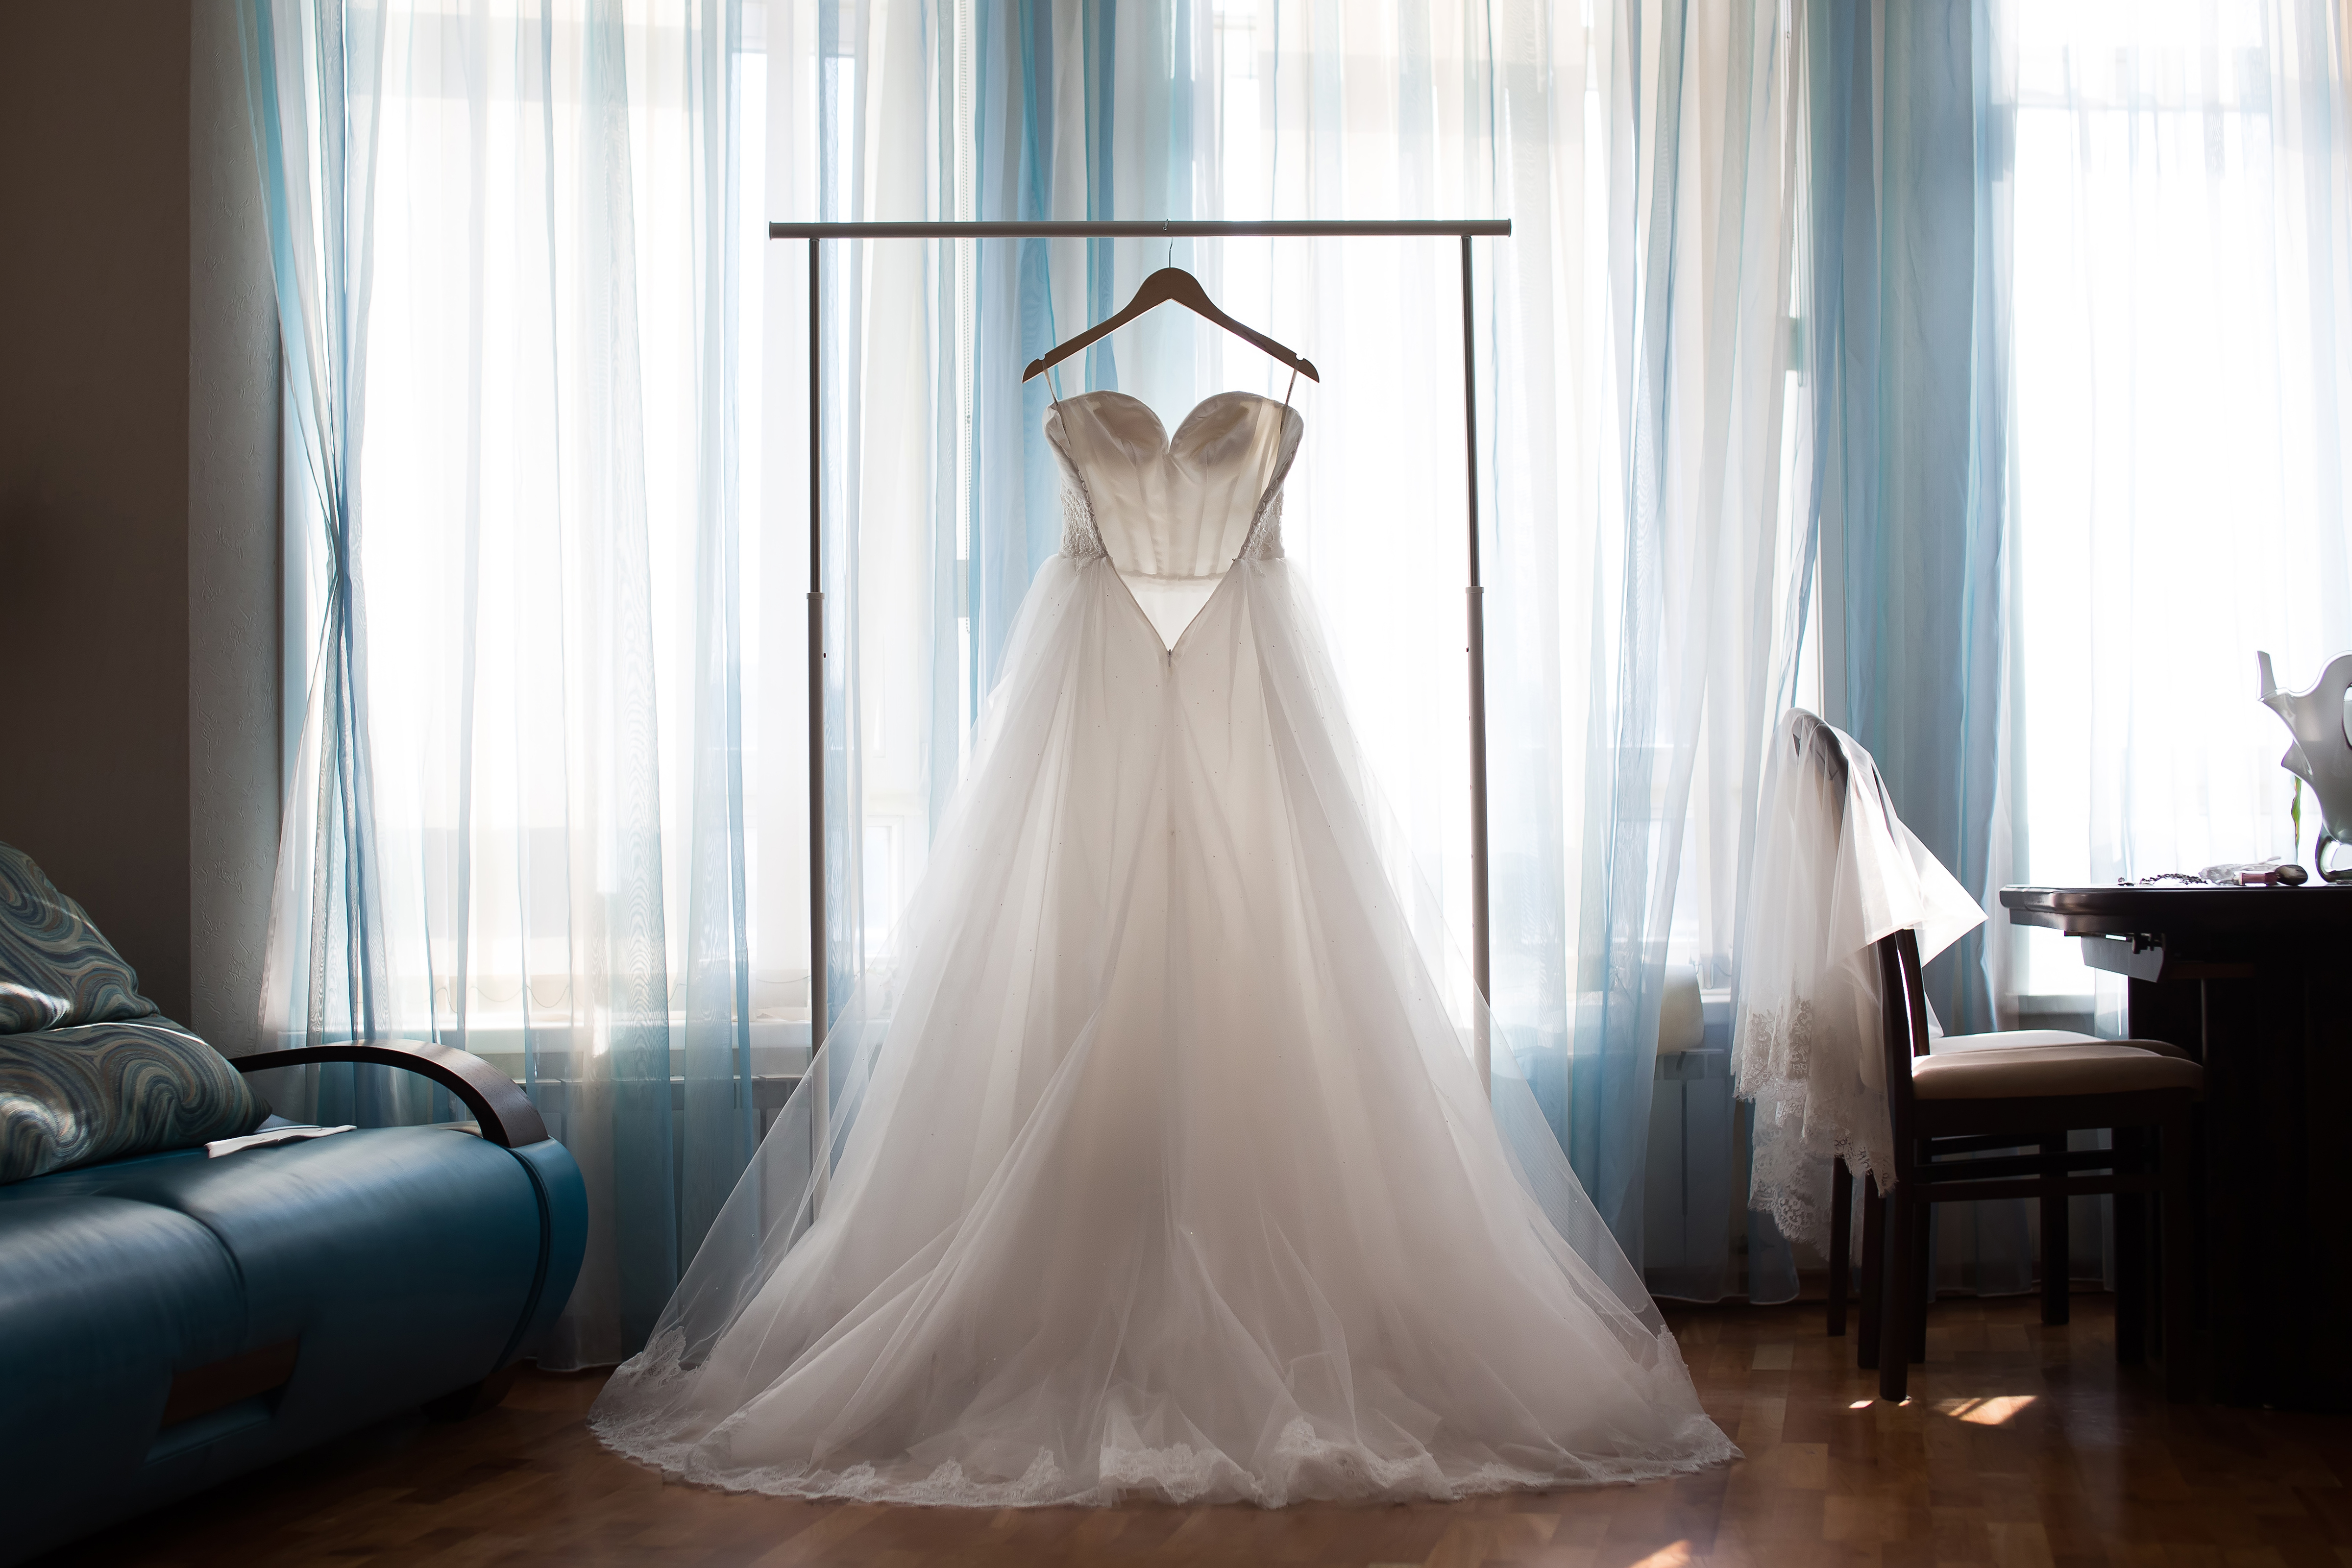 Un vestido de novia blanco en una percha | Fuente: Shutterstock